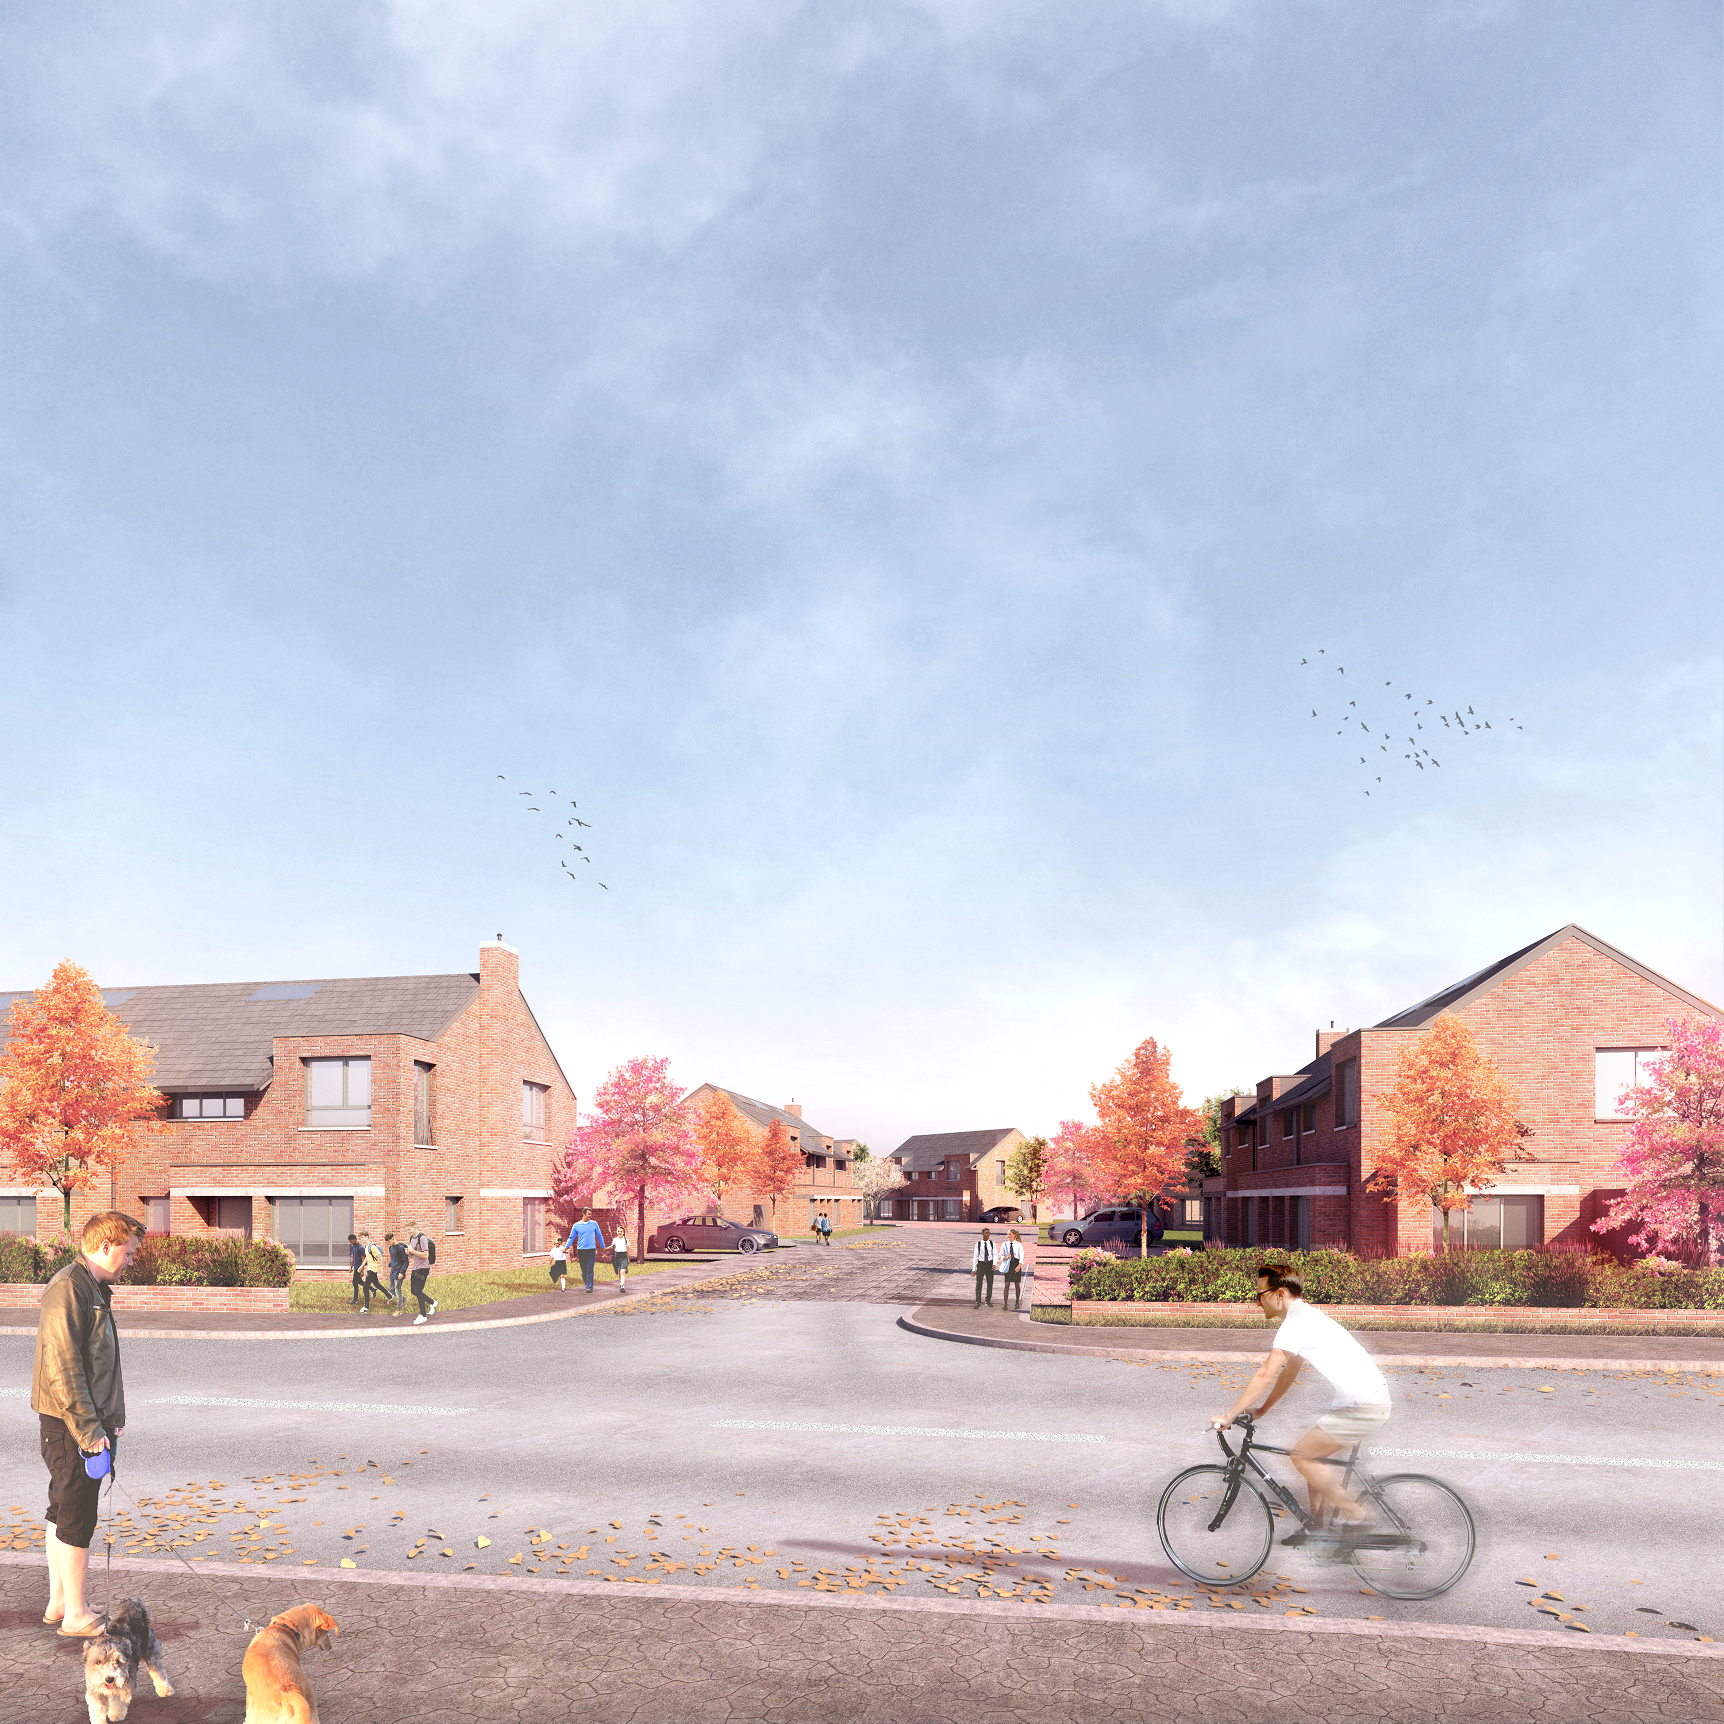 Work starts on affordable housing development in Lockerbie